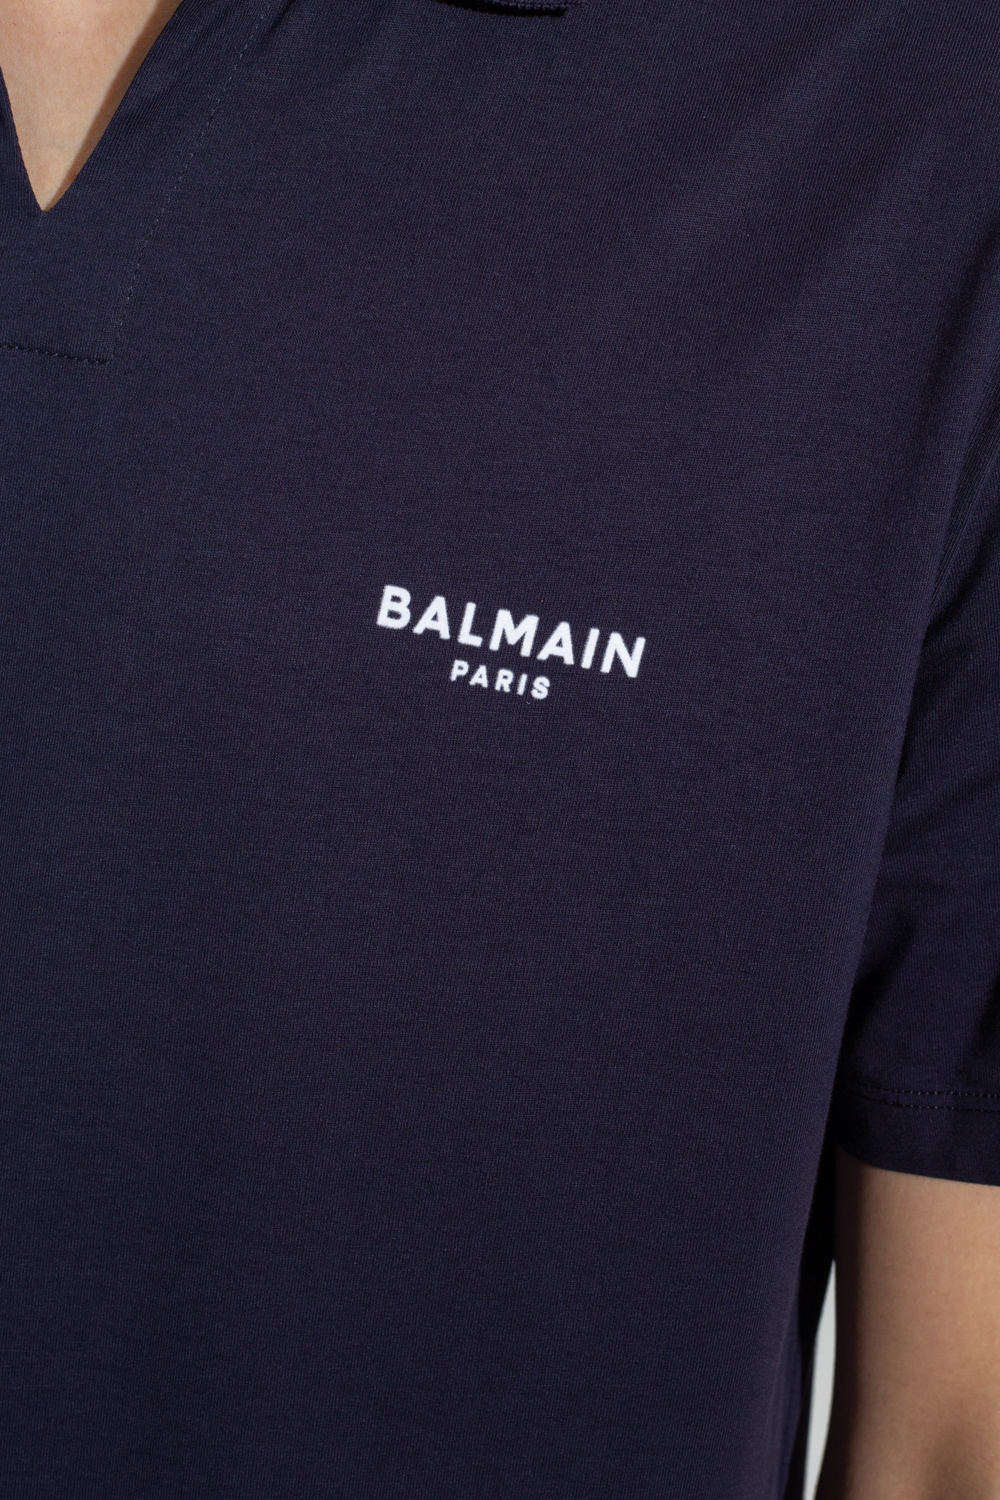 Balmain beanie polo shirt with logo